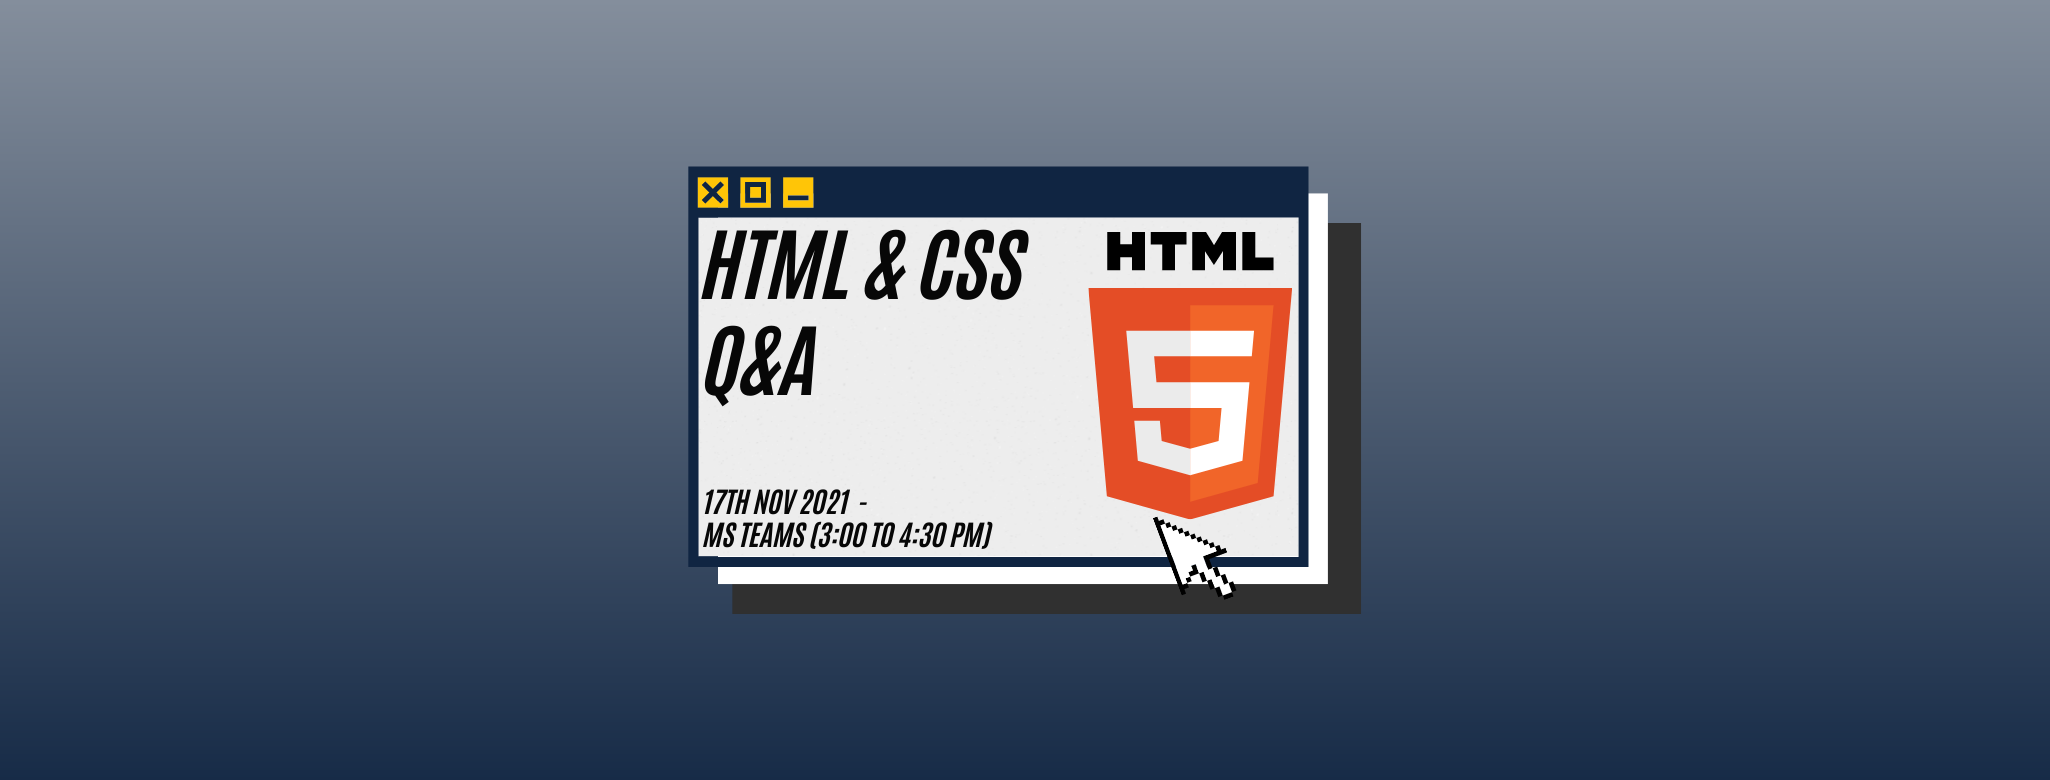 HTML/CSS Q&A Banner